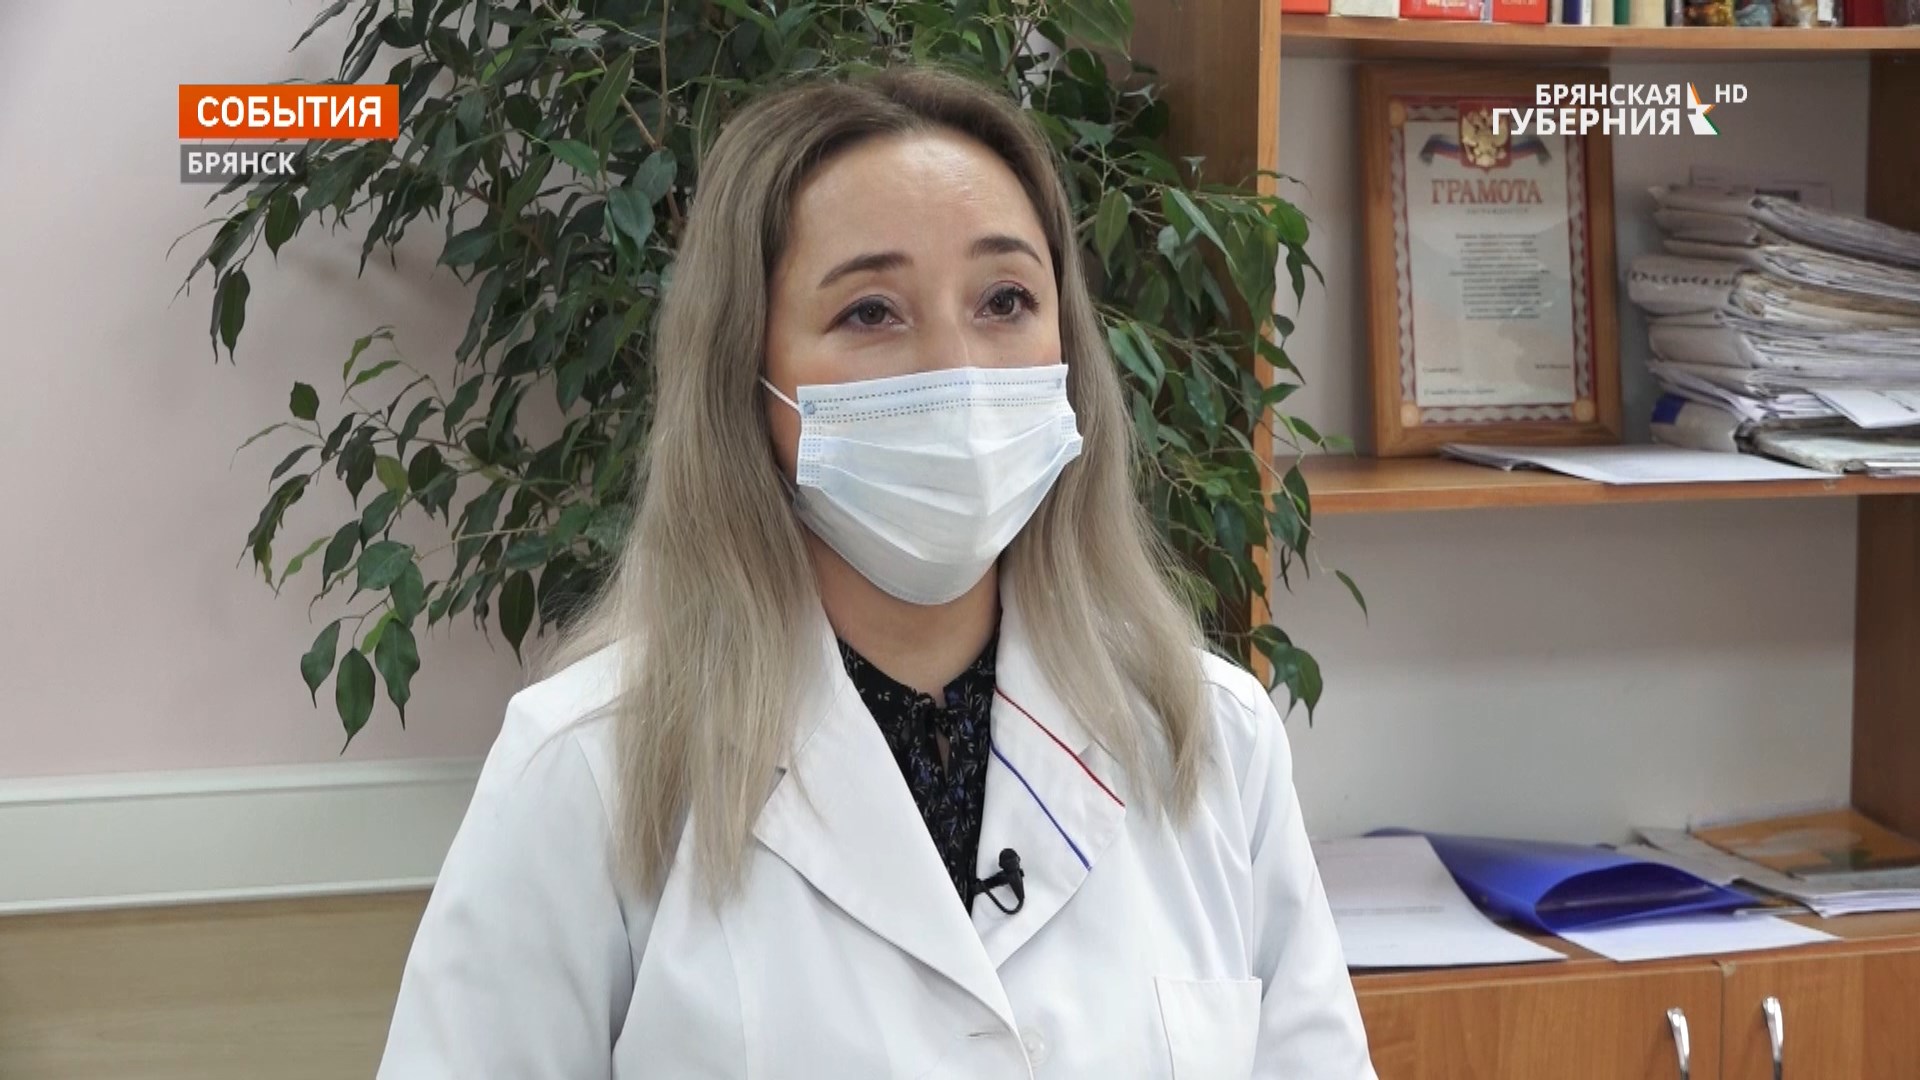 Брянский врач Лариса Канцева призвала земляков задуматься о своей жизни и вакцинироваться